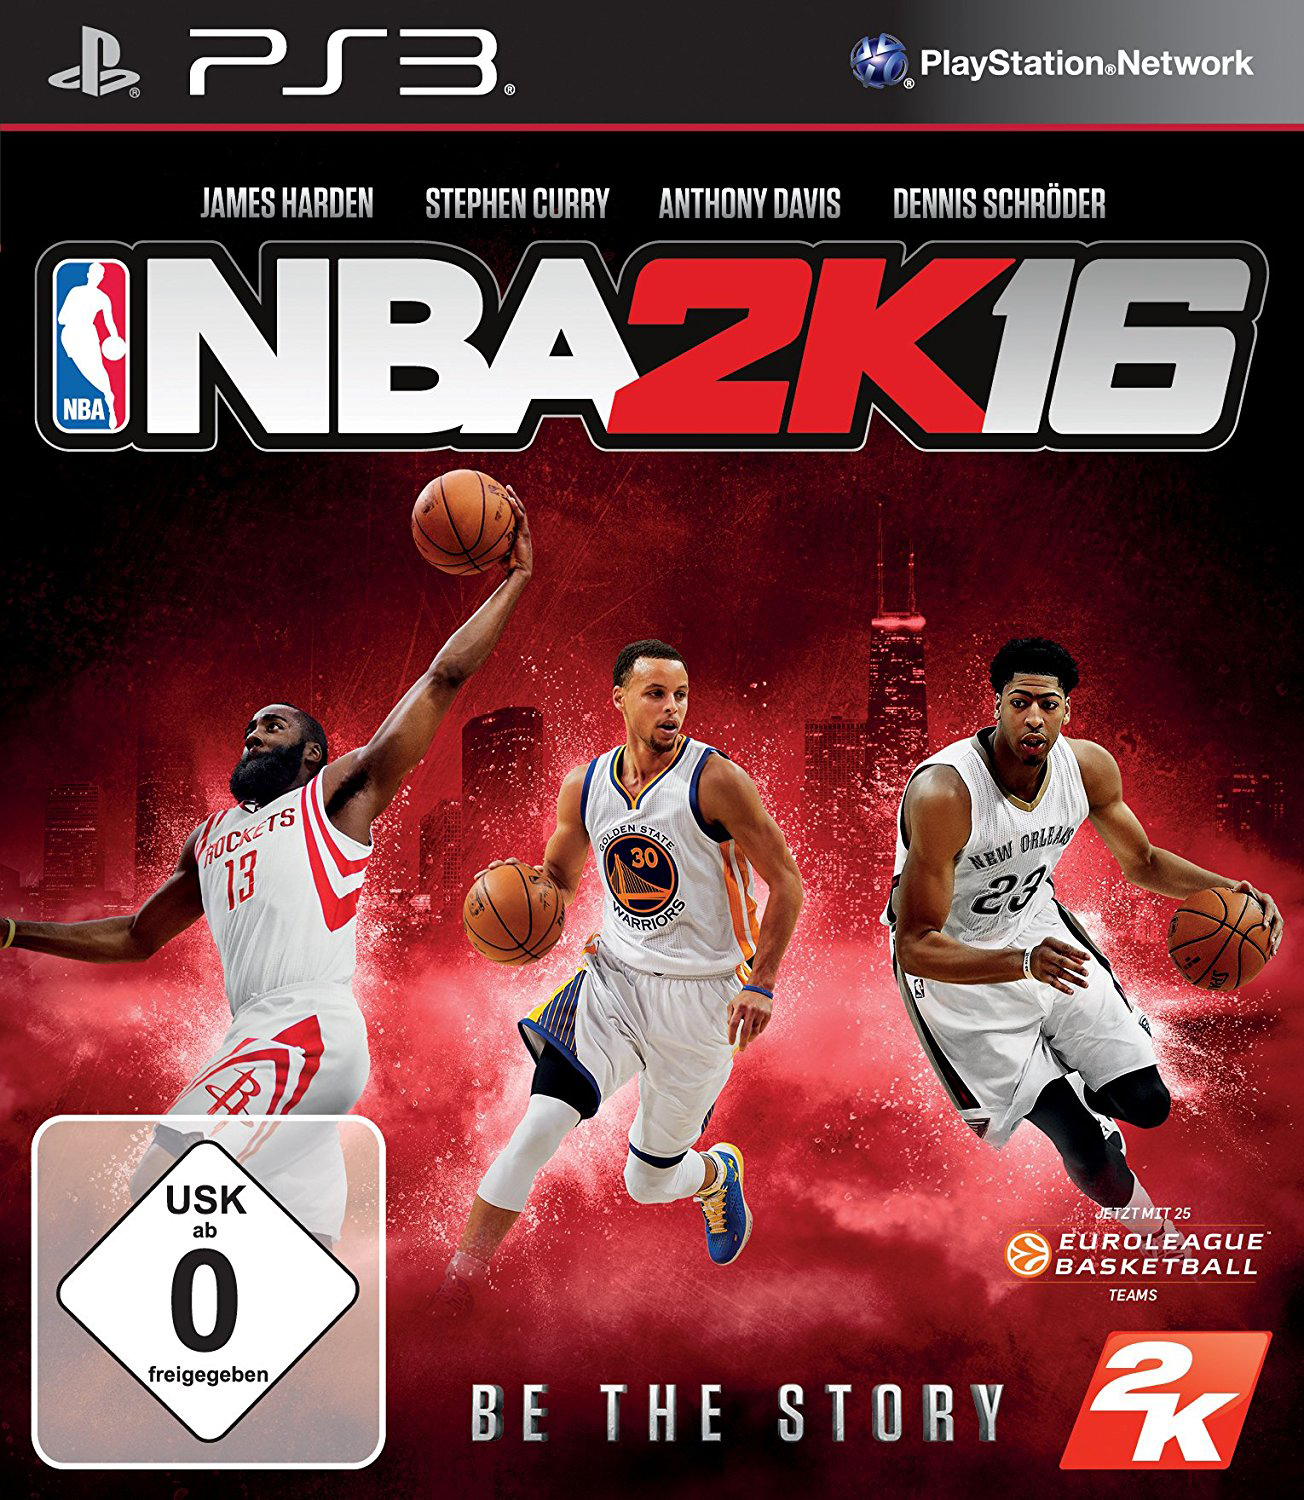 2K16 [PlayStation - NBA 3]